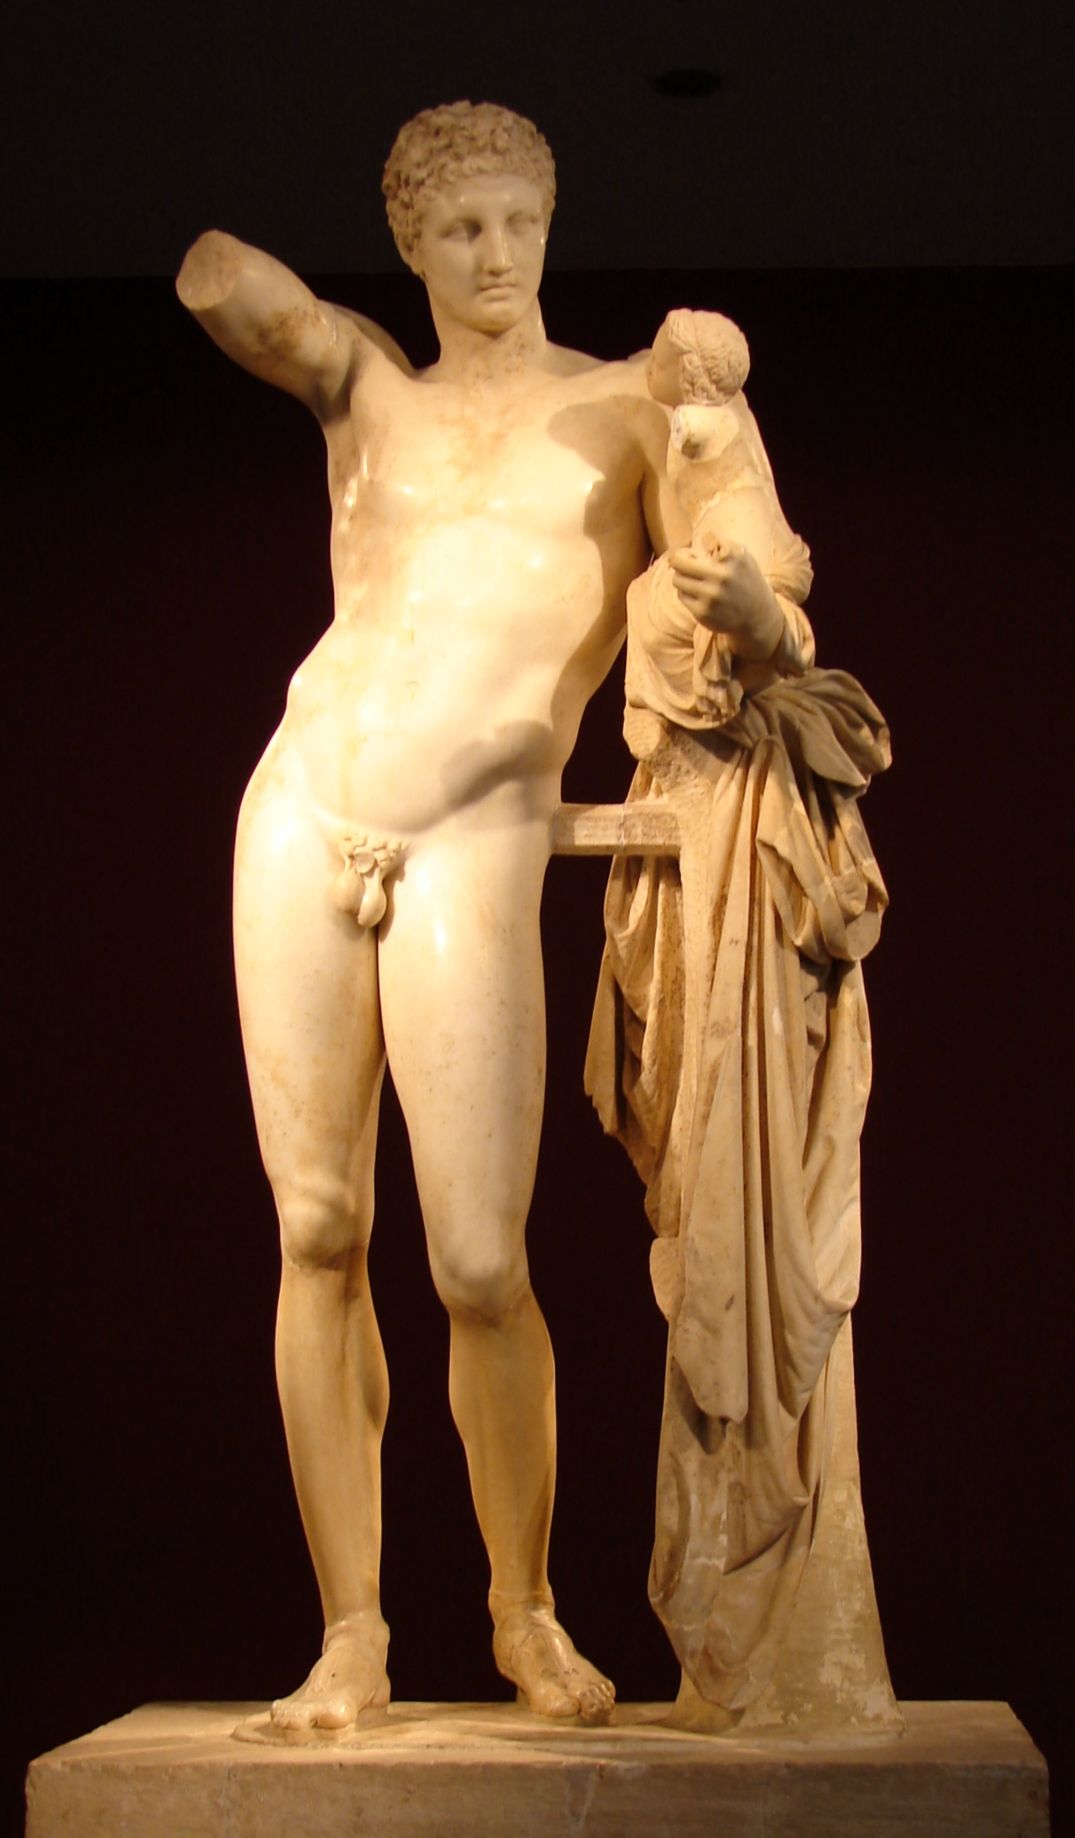 Hermes di Prassitele at Olimpia front